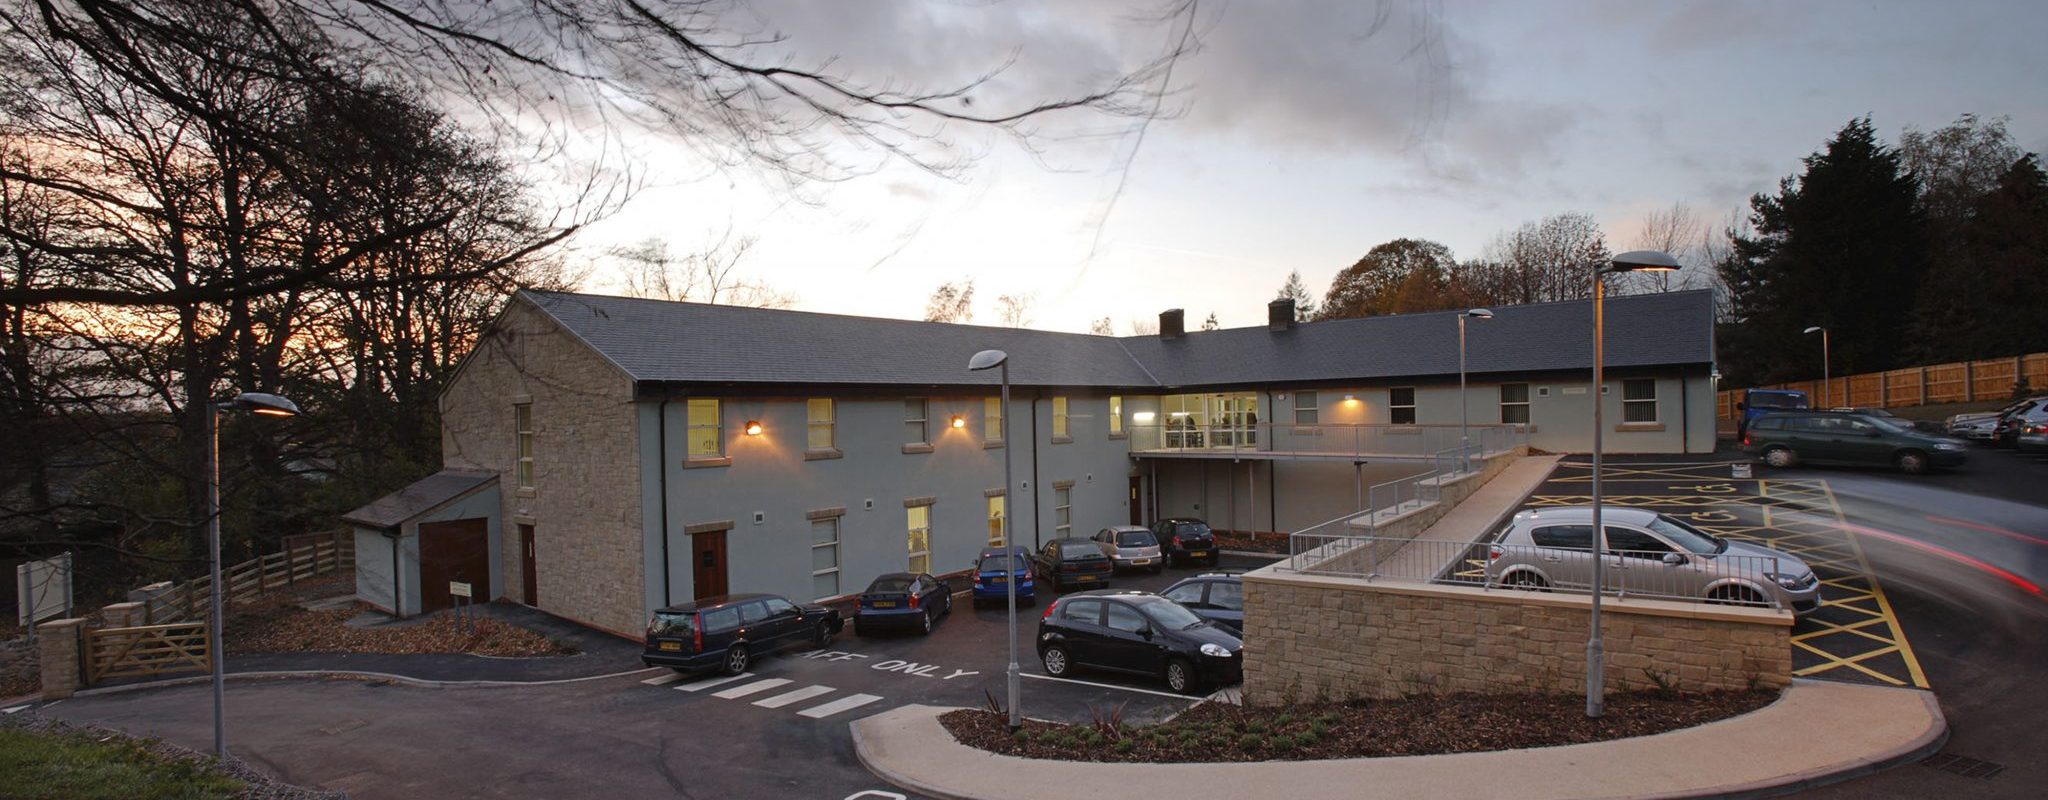 Corbridge Health Centre